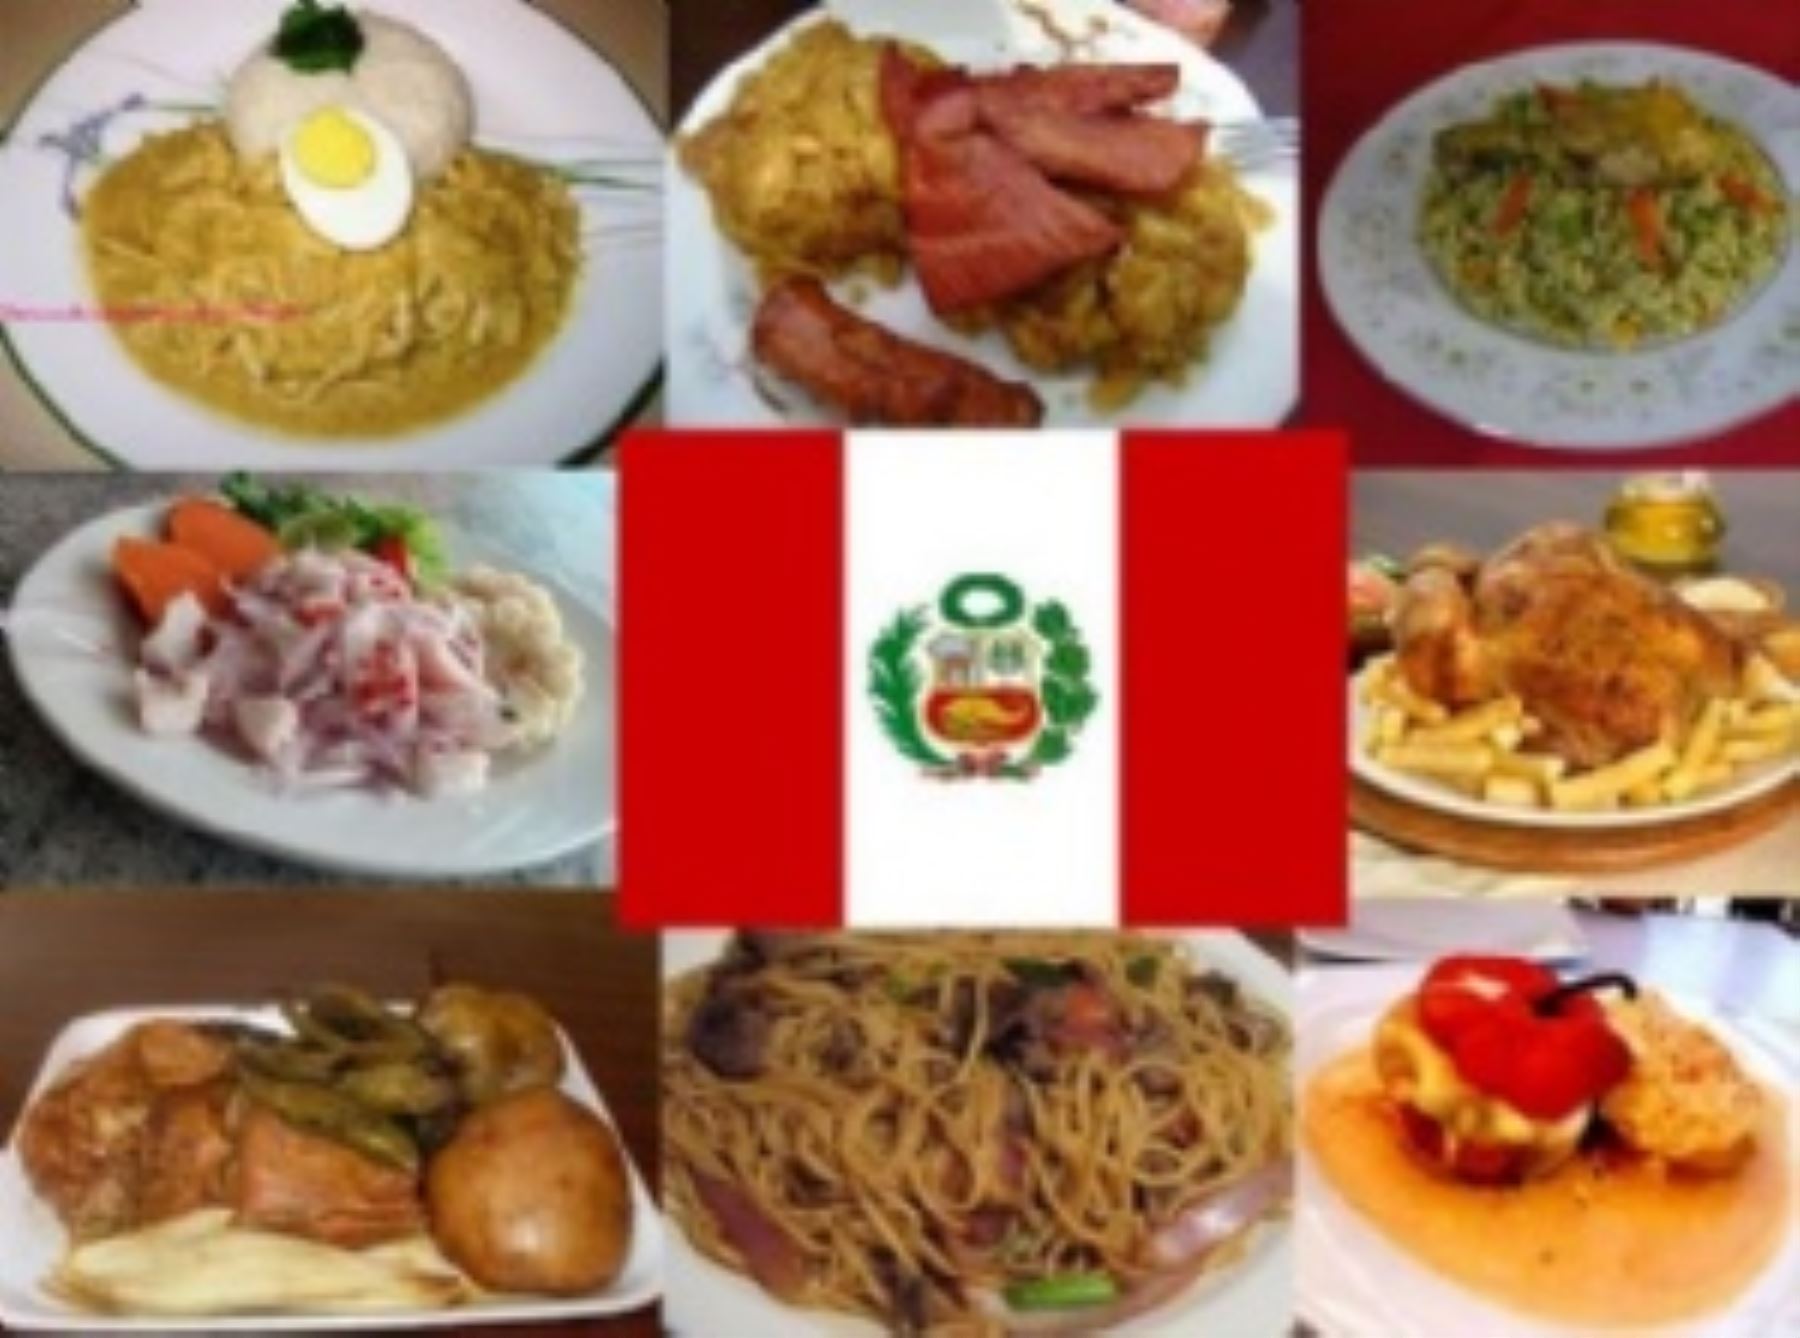 Día de la Gastronomía: ¿Cuáles son los potajes preferidos por los peruanos?